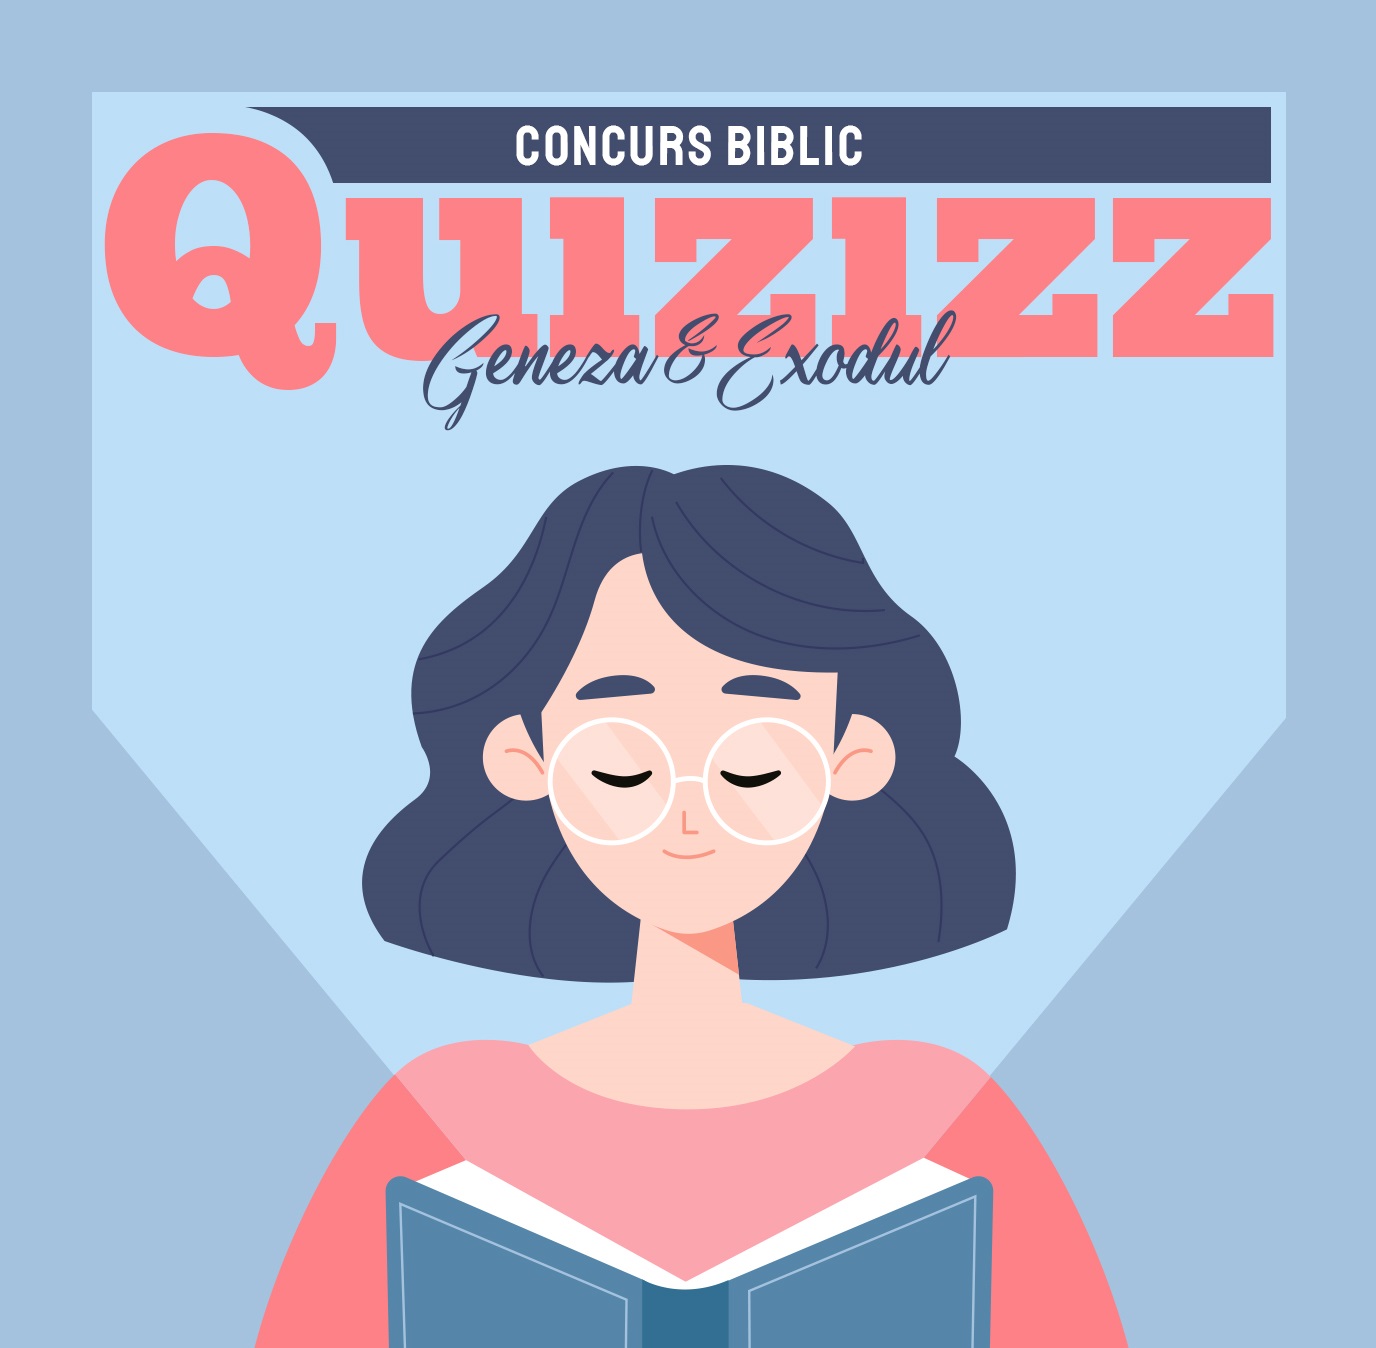 Concurs Biblic - Quizizz